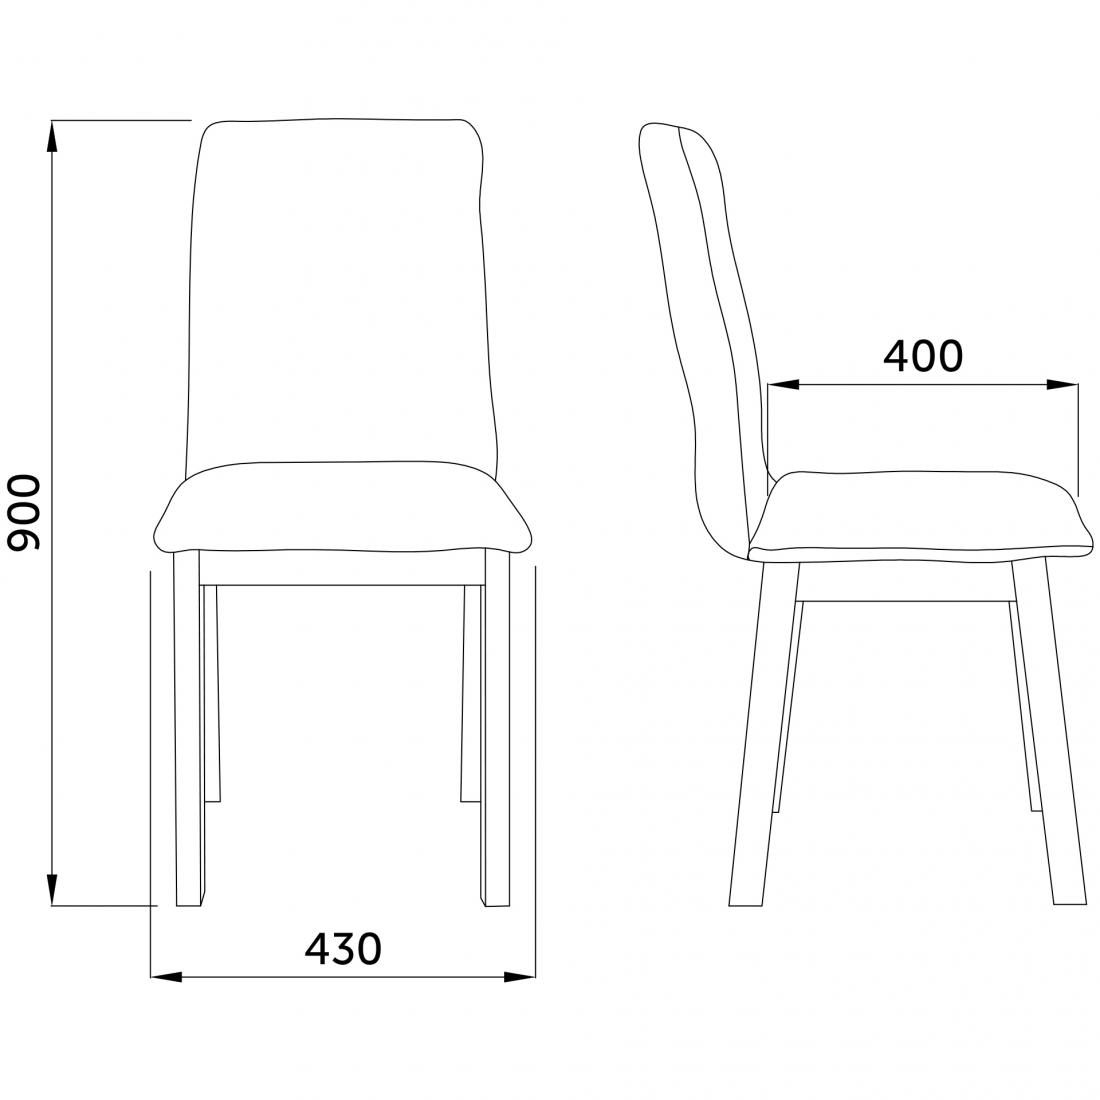 Кресла, столы, стулья со скидкой 30% в магазине "AksHome" в Могилеве